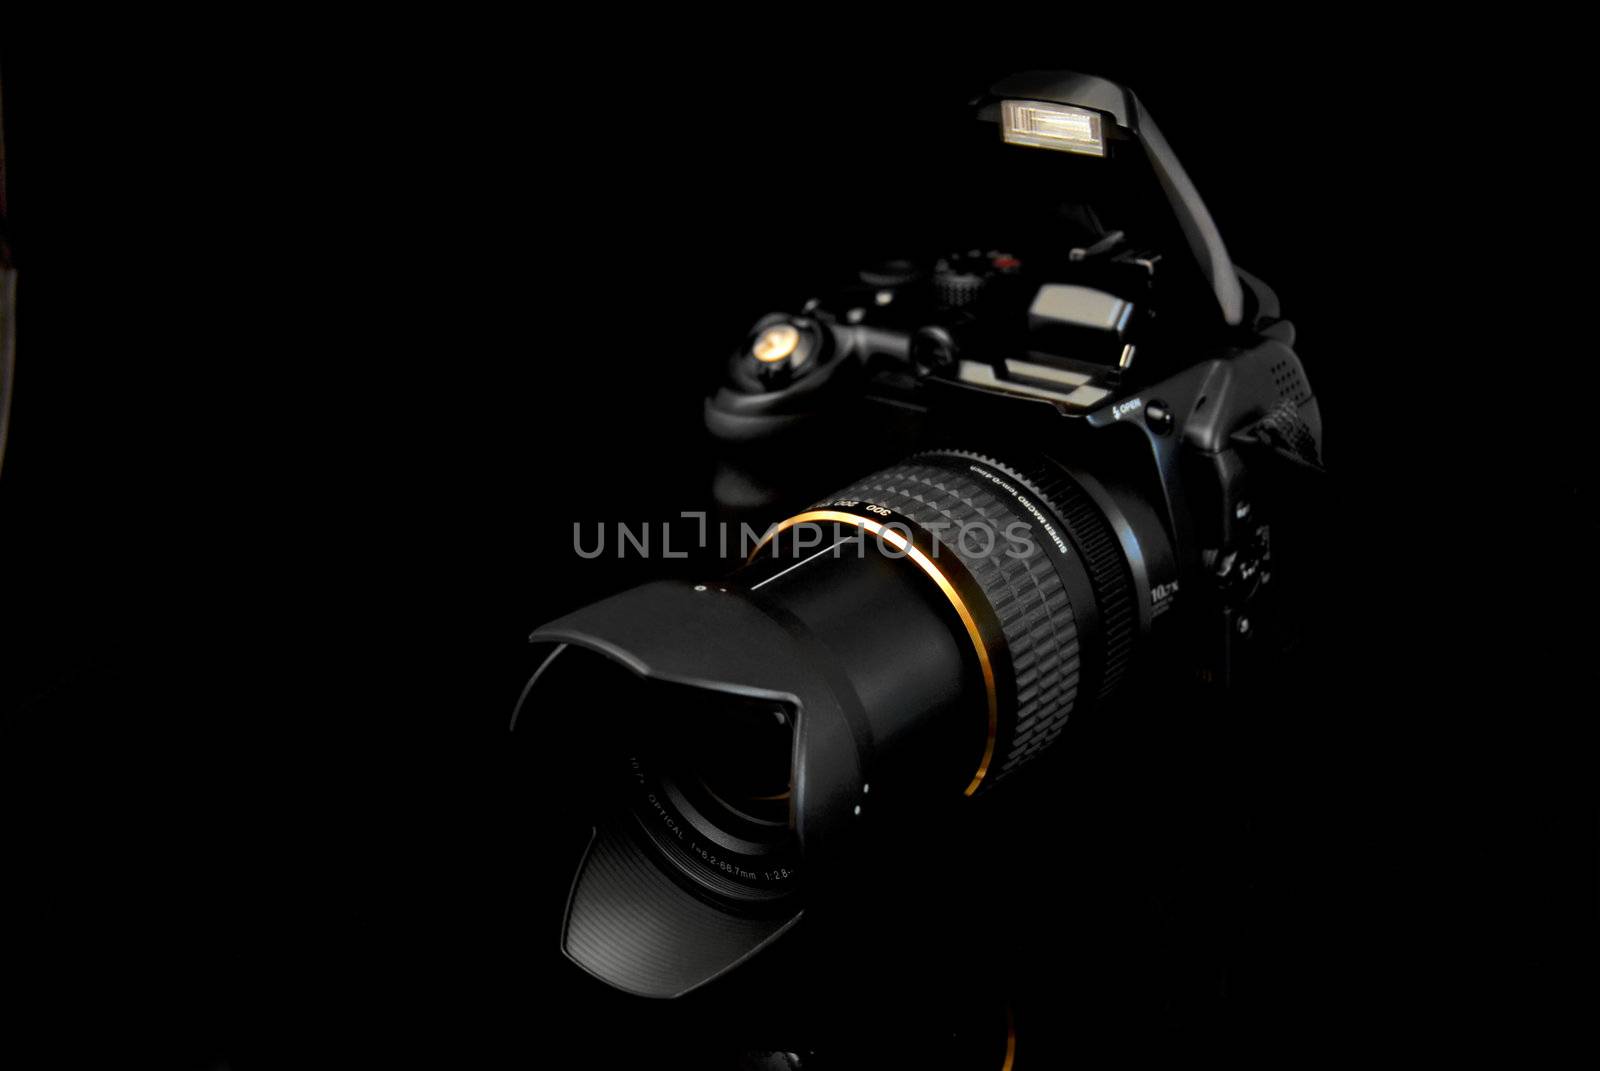 Modern profesionalny camera SLR by anki21